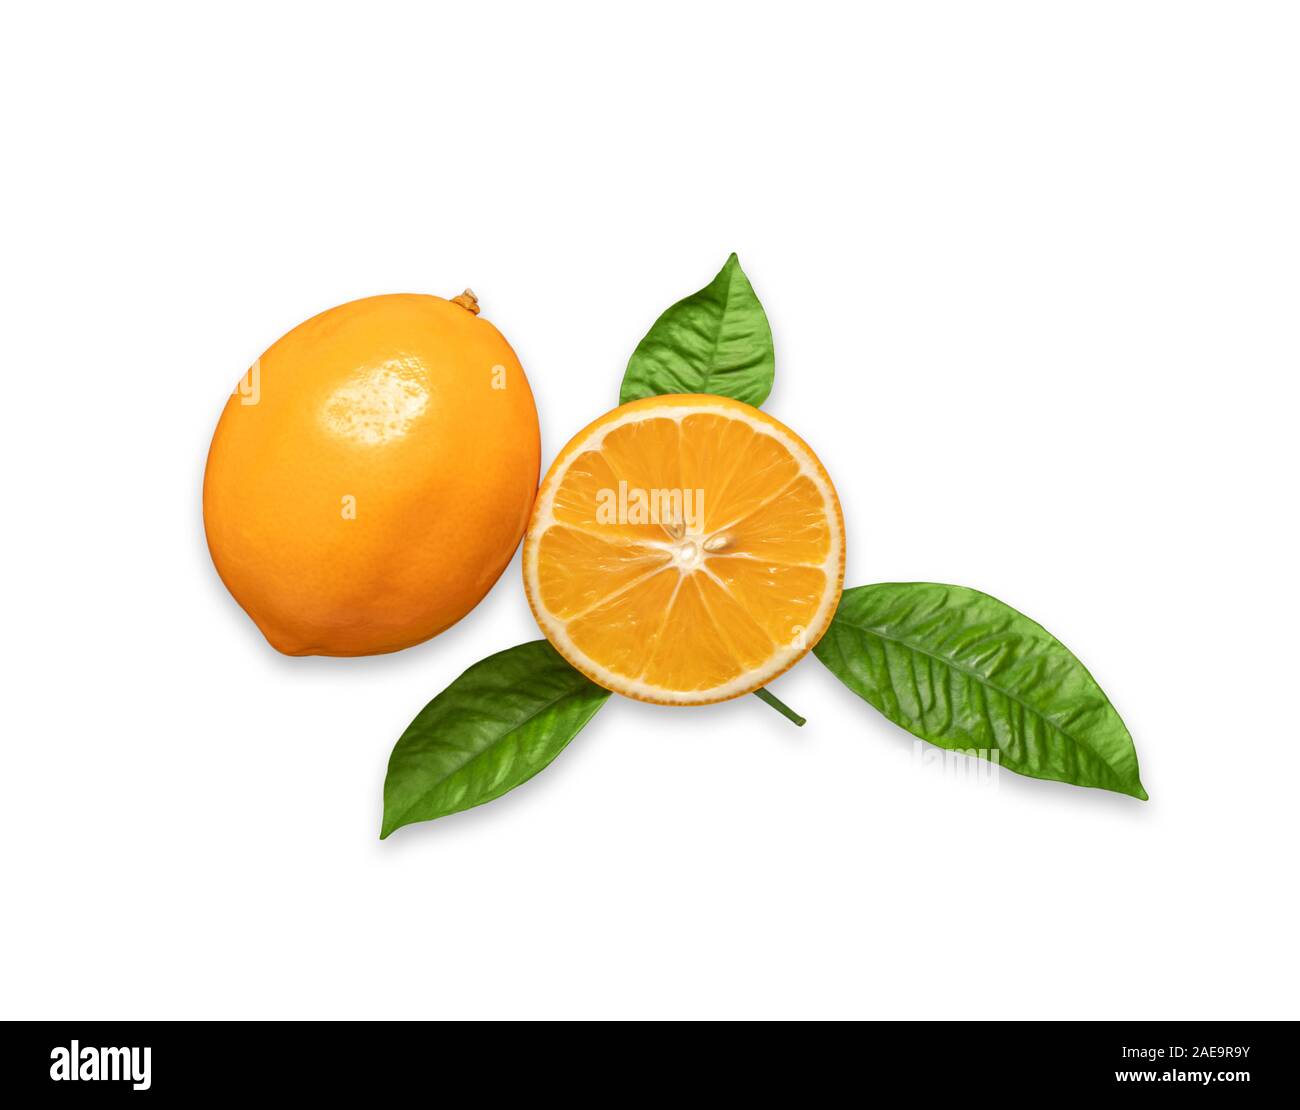 Fette di arancia e tutta la frutta di agrumi isolati su sfondo bianco. Mature succose fette di arancia limone. Citrus meyeri con foglie verdi di close-up. Foto Stock